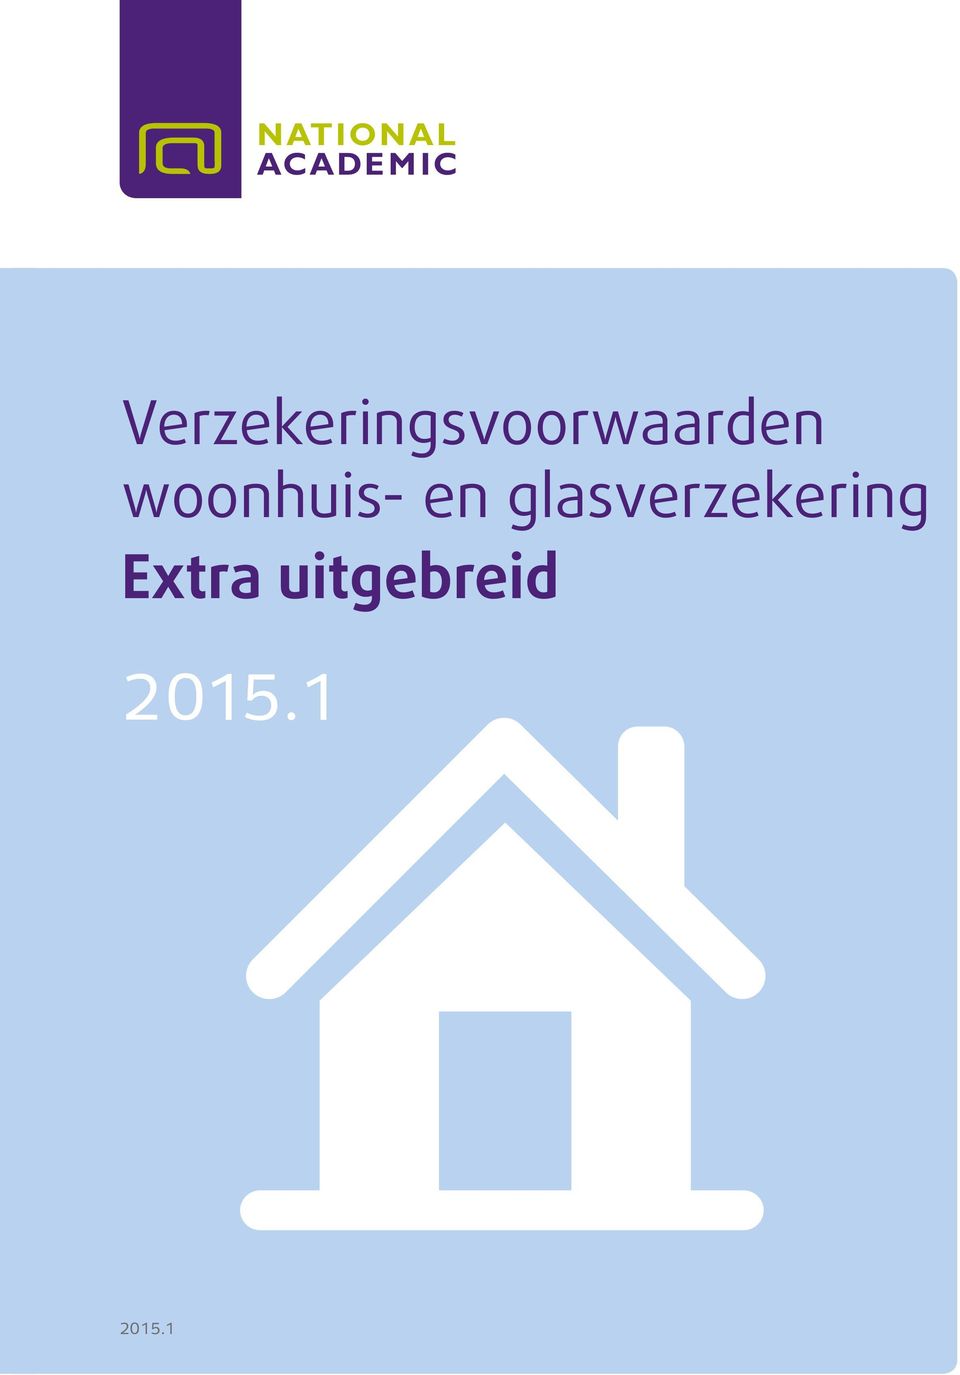 uitgebreid woonhuis- en glasverzekering 2014 2015.